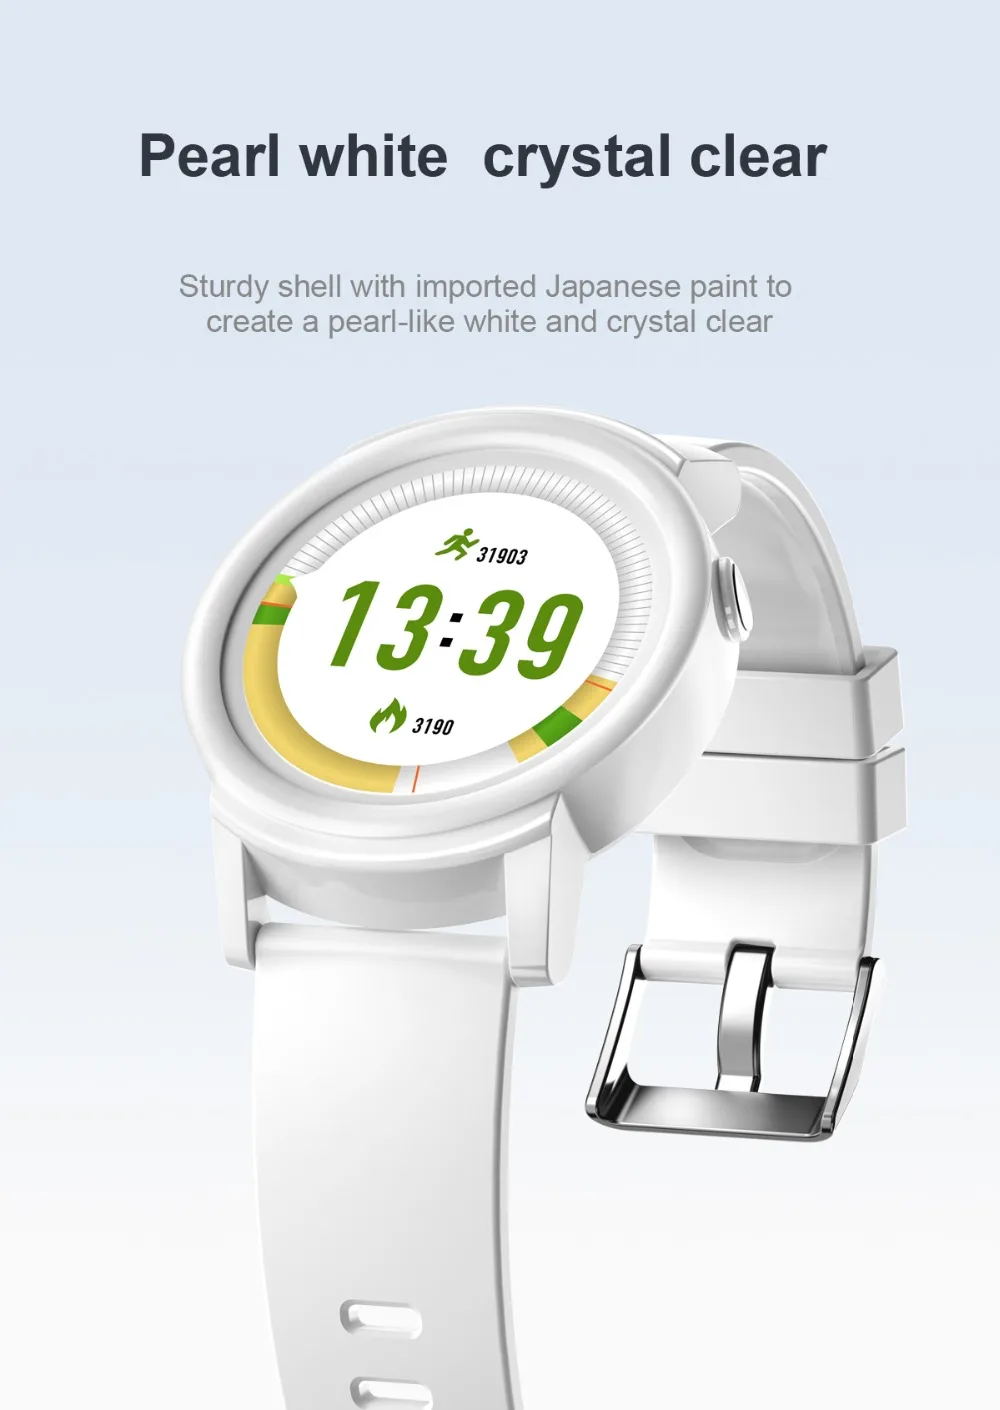 696 DK02 Смарт часы для мужчин полный круглый экран дисплей мульти-спортивный режим монитор сердечного ритма Смарт фитнес-трекер здоровья Smartwatch